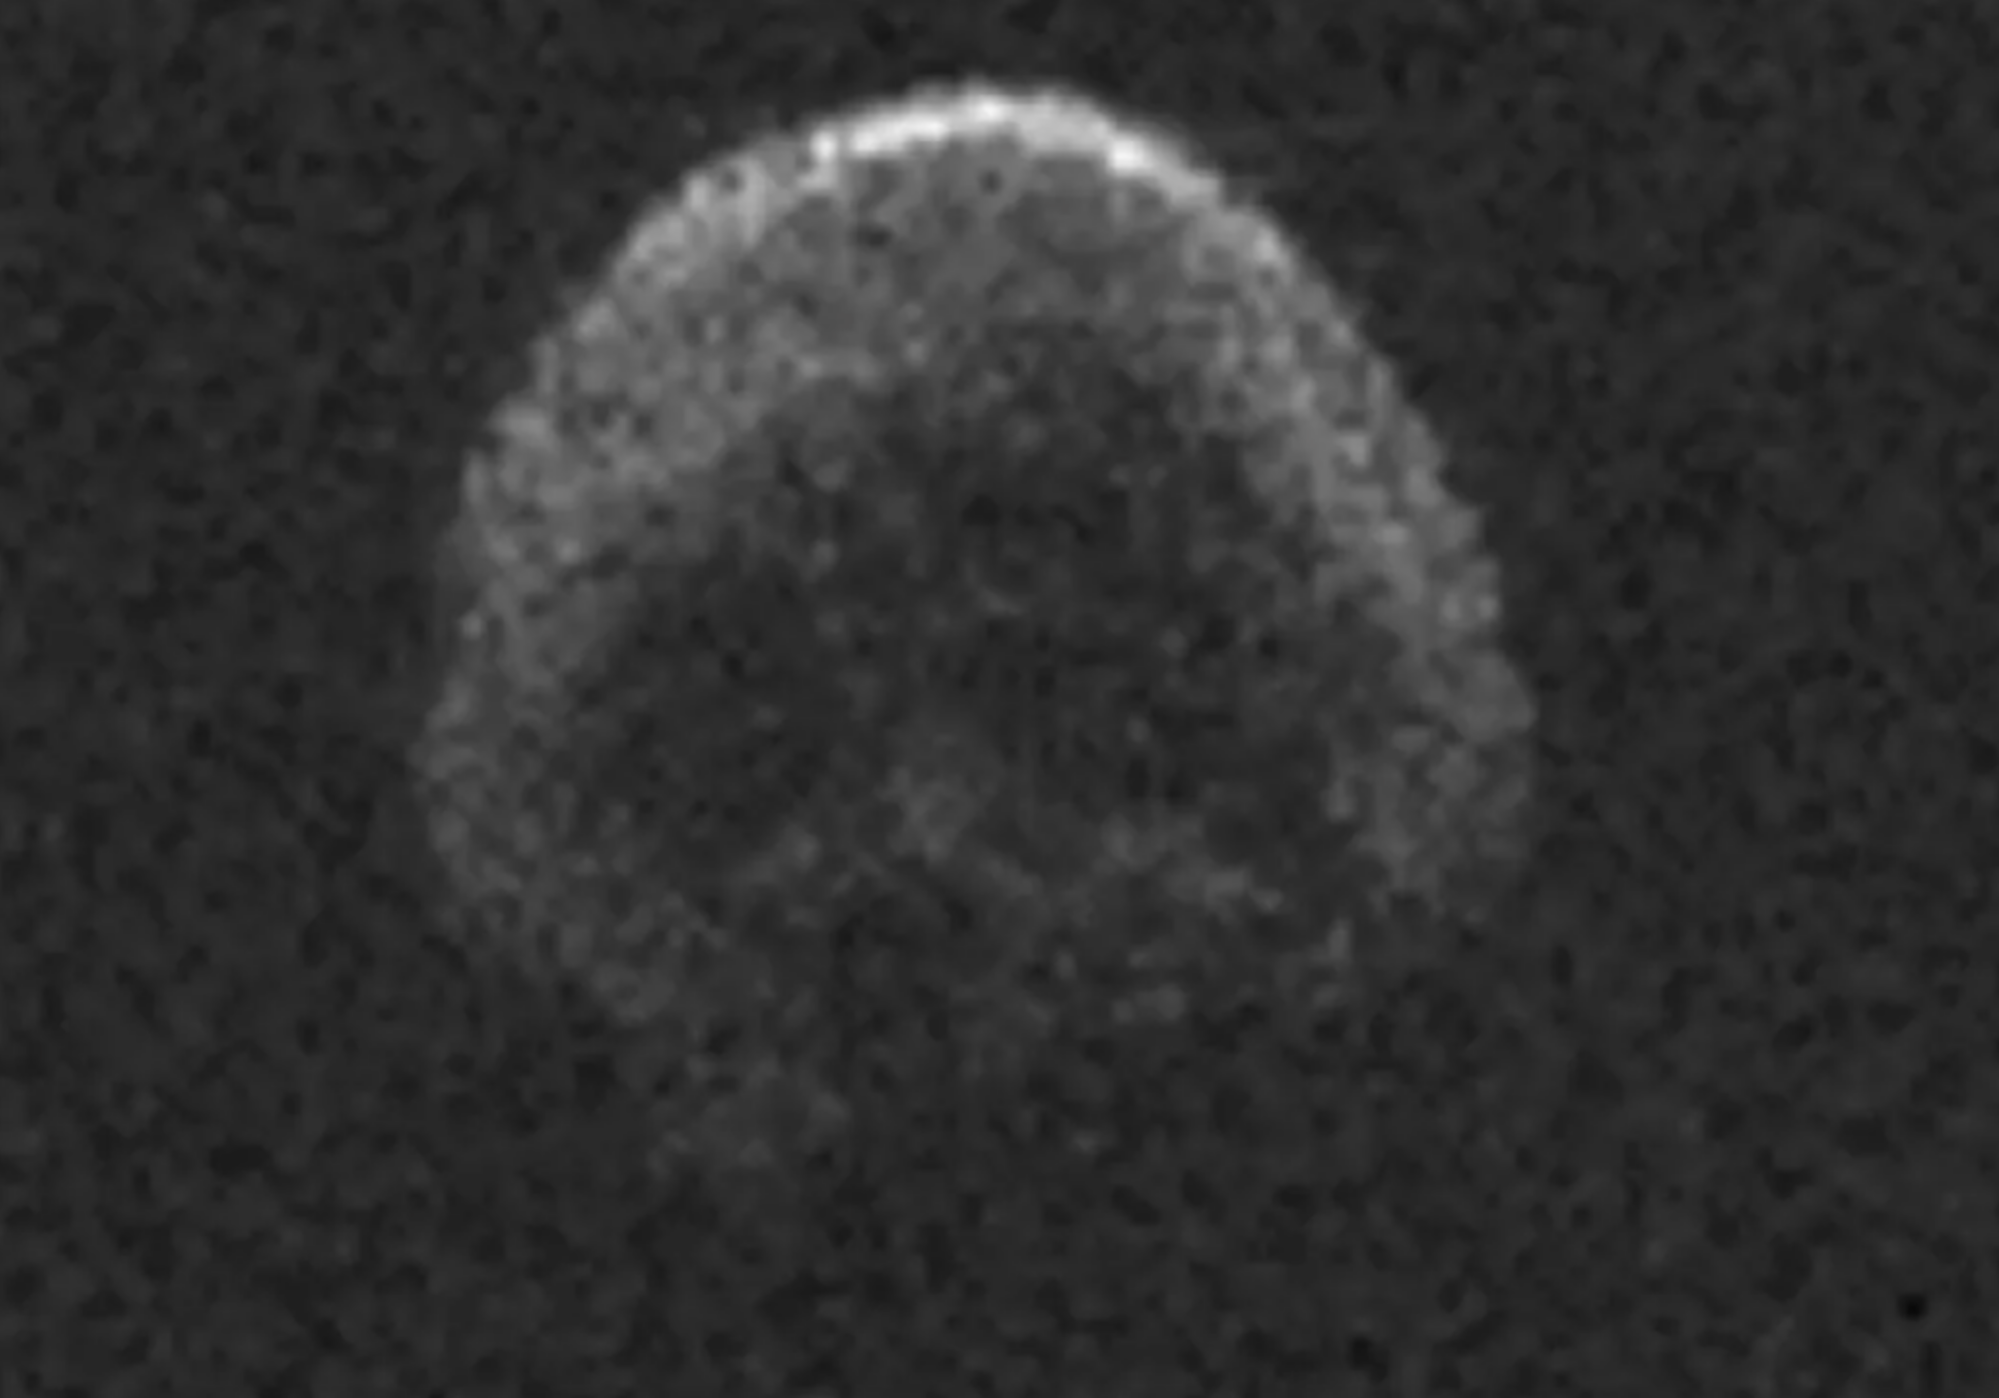 L'astéroïde 2015 TB145, qui ressemble à un crâne, est passé autrefois à moins de 302 000 milles de la Terre.